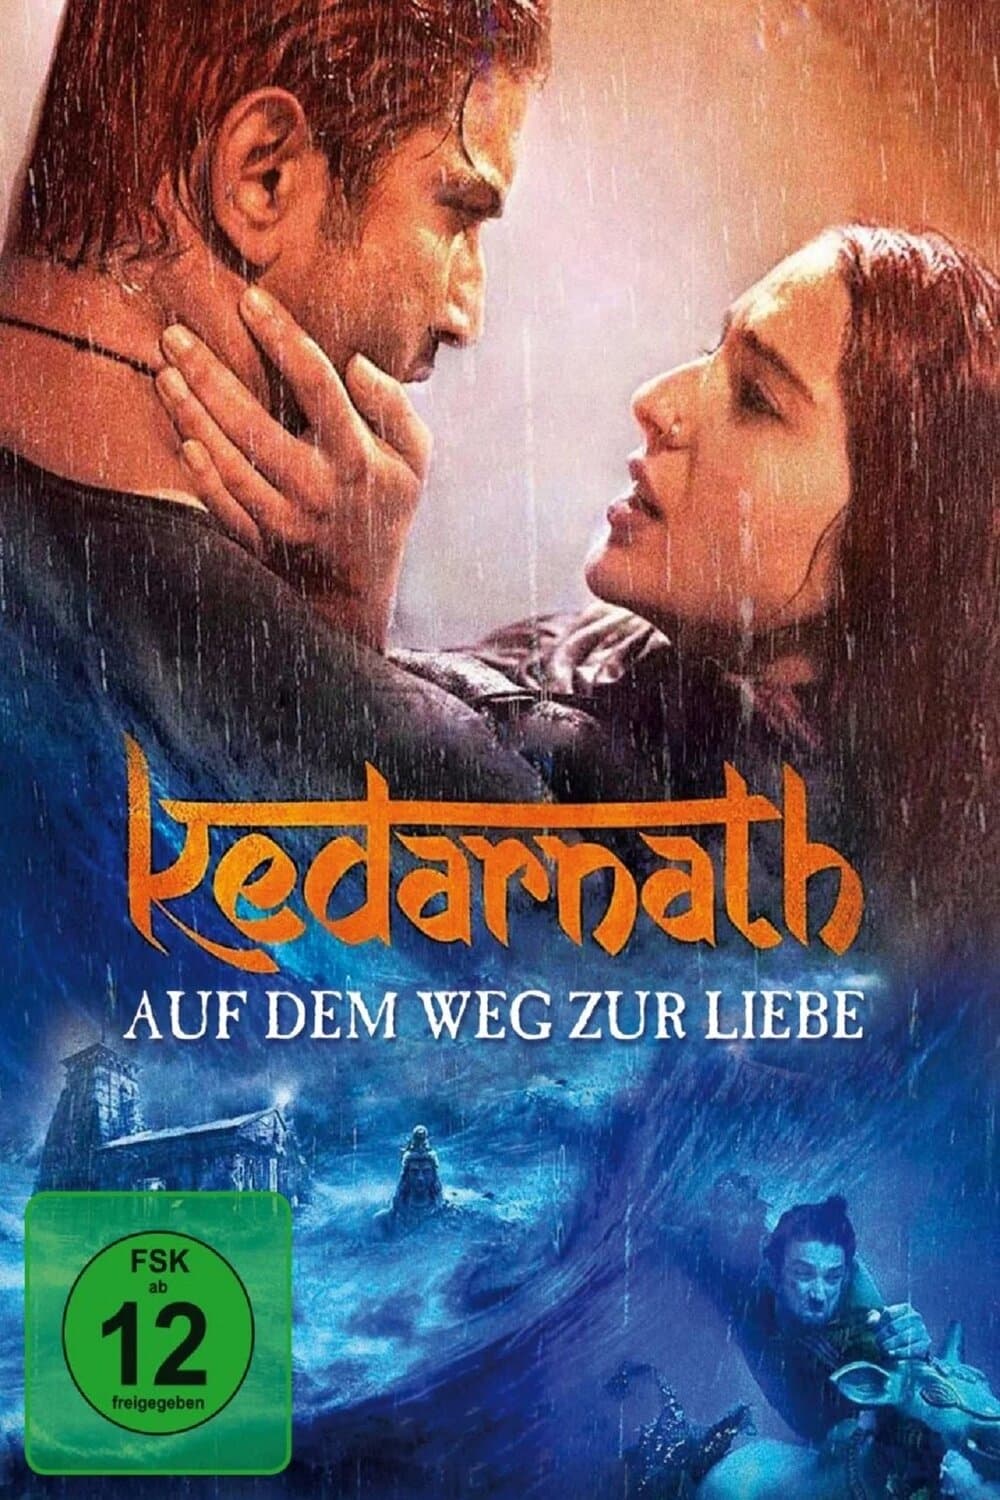 Kedarnath (2018) Bollywood Hindi Movie HD ESub